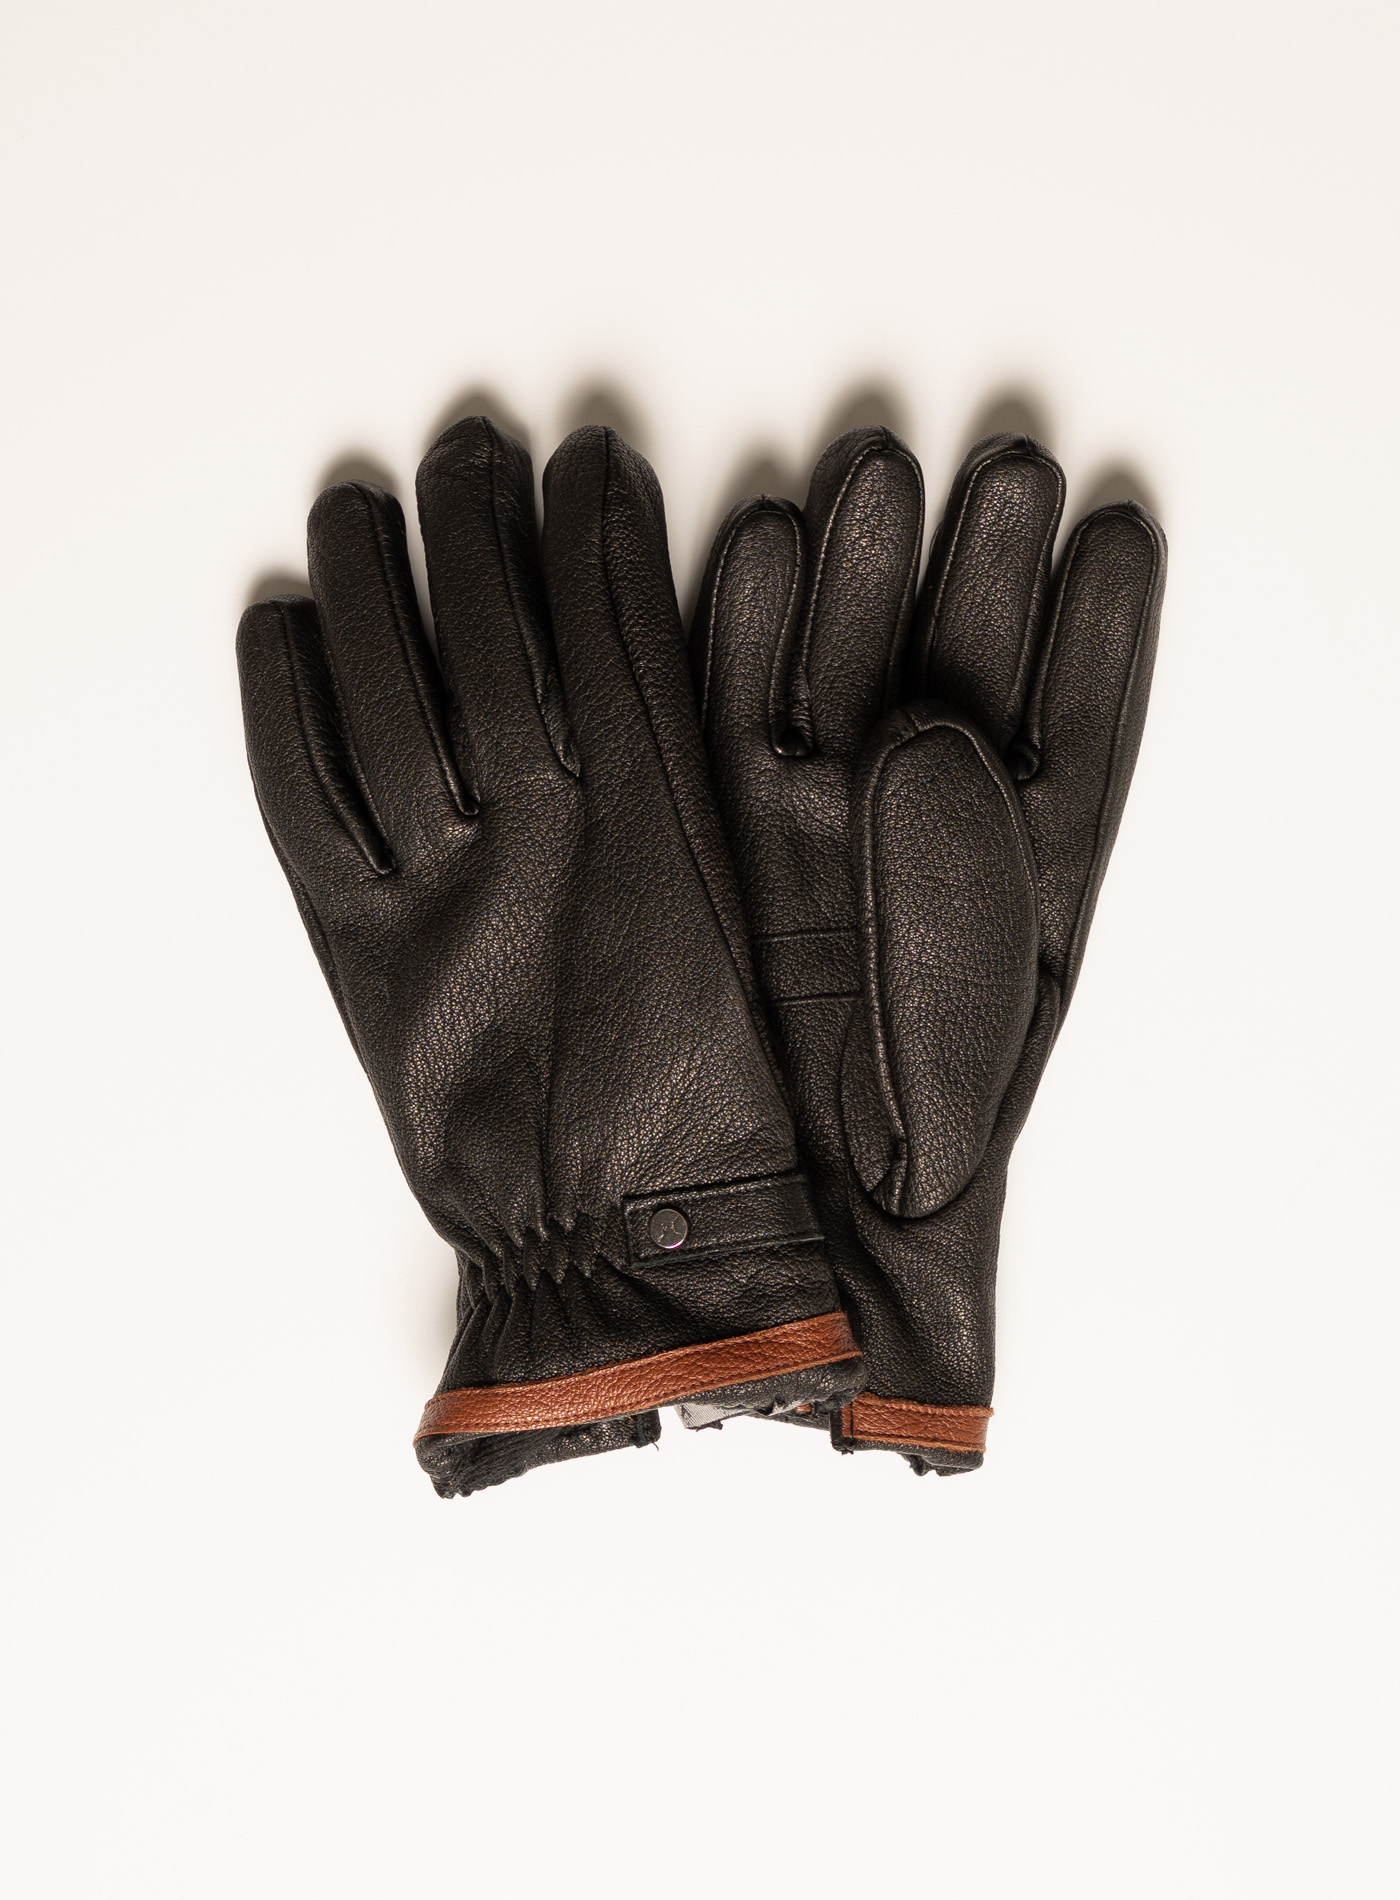 Handschuhe von Pearlwood | Wormland